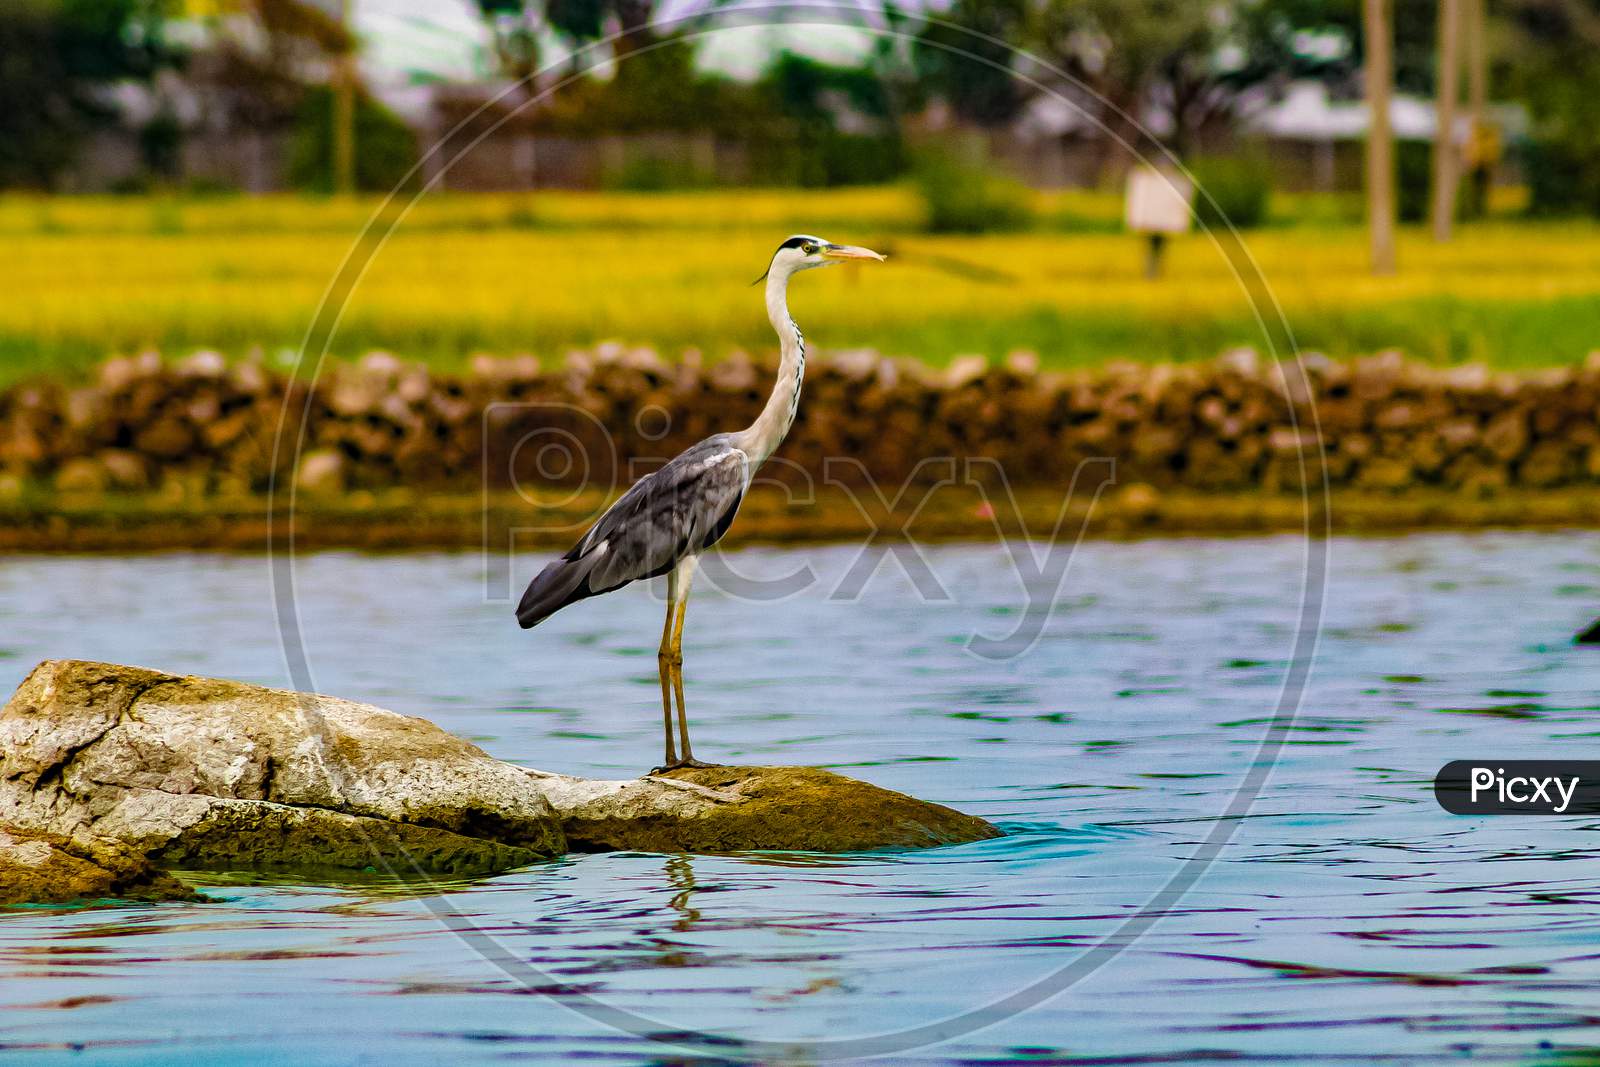 a bird near a water body